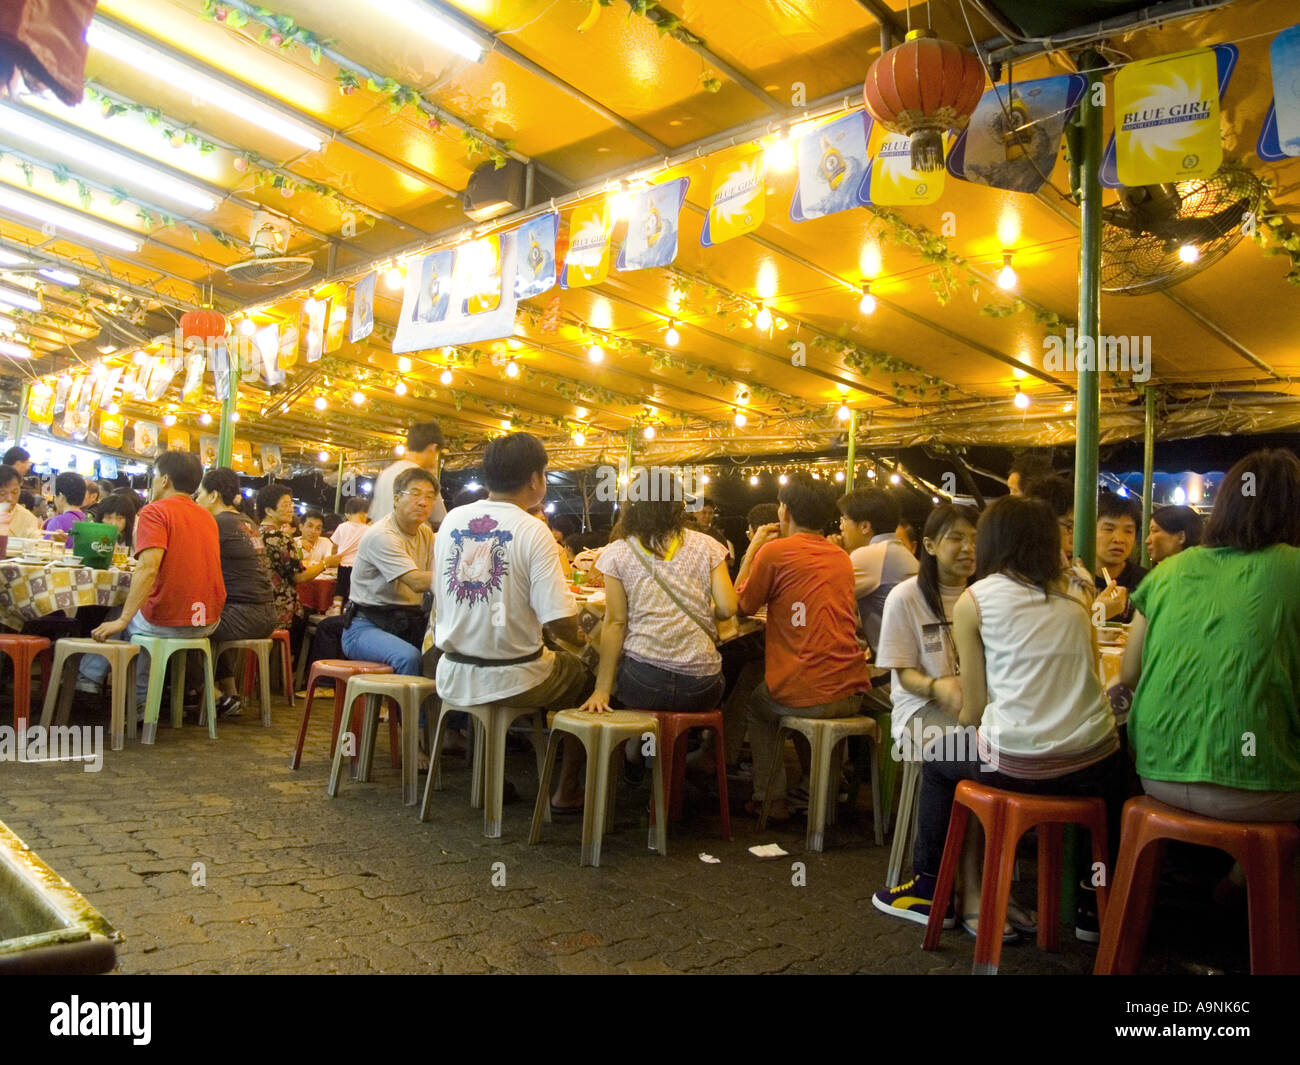 Seafood Restaurant Cheung Chau island at night Hong Kong china Stock Photo